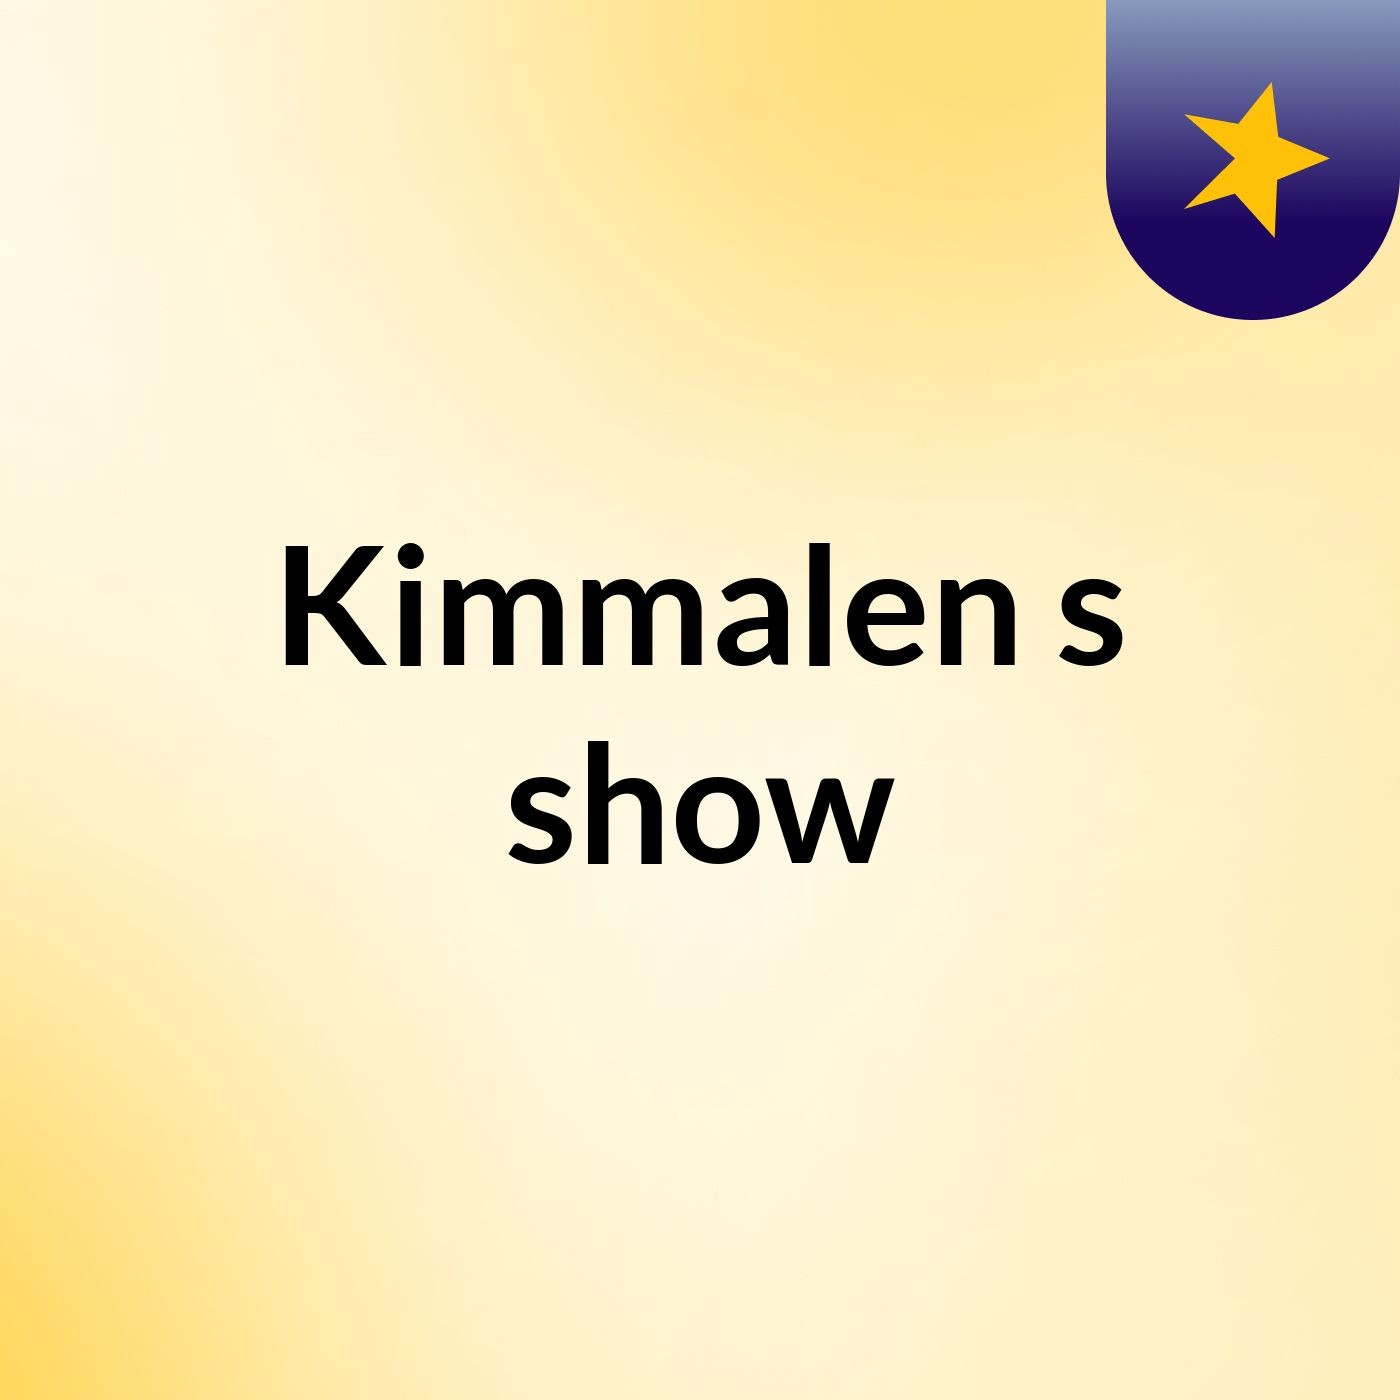 Kimmalen's show